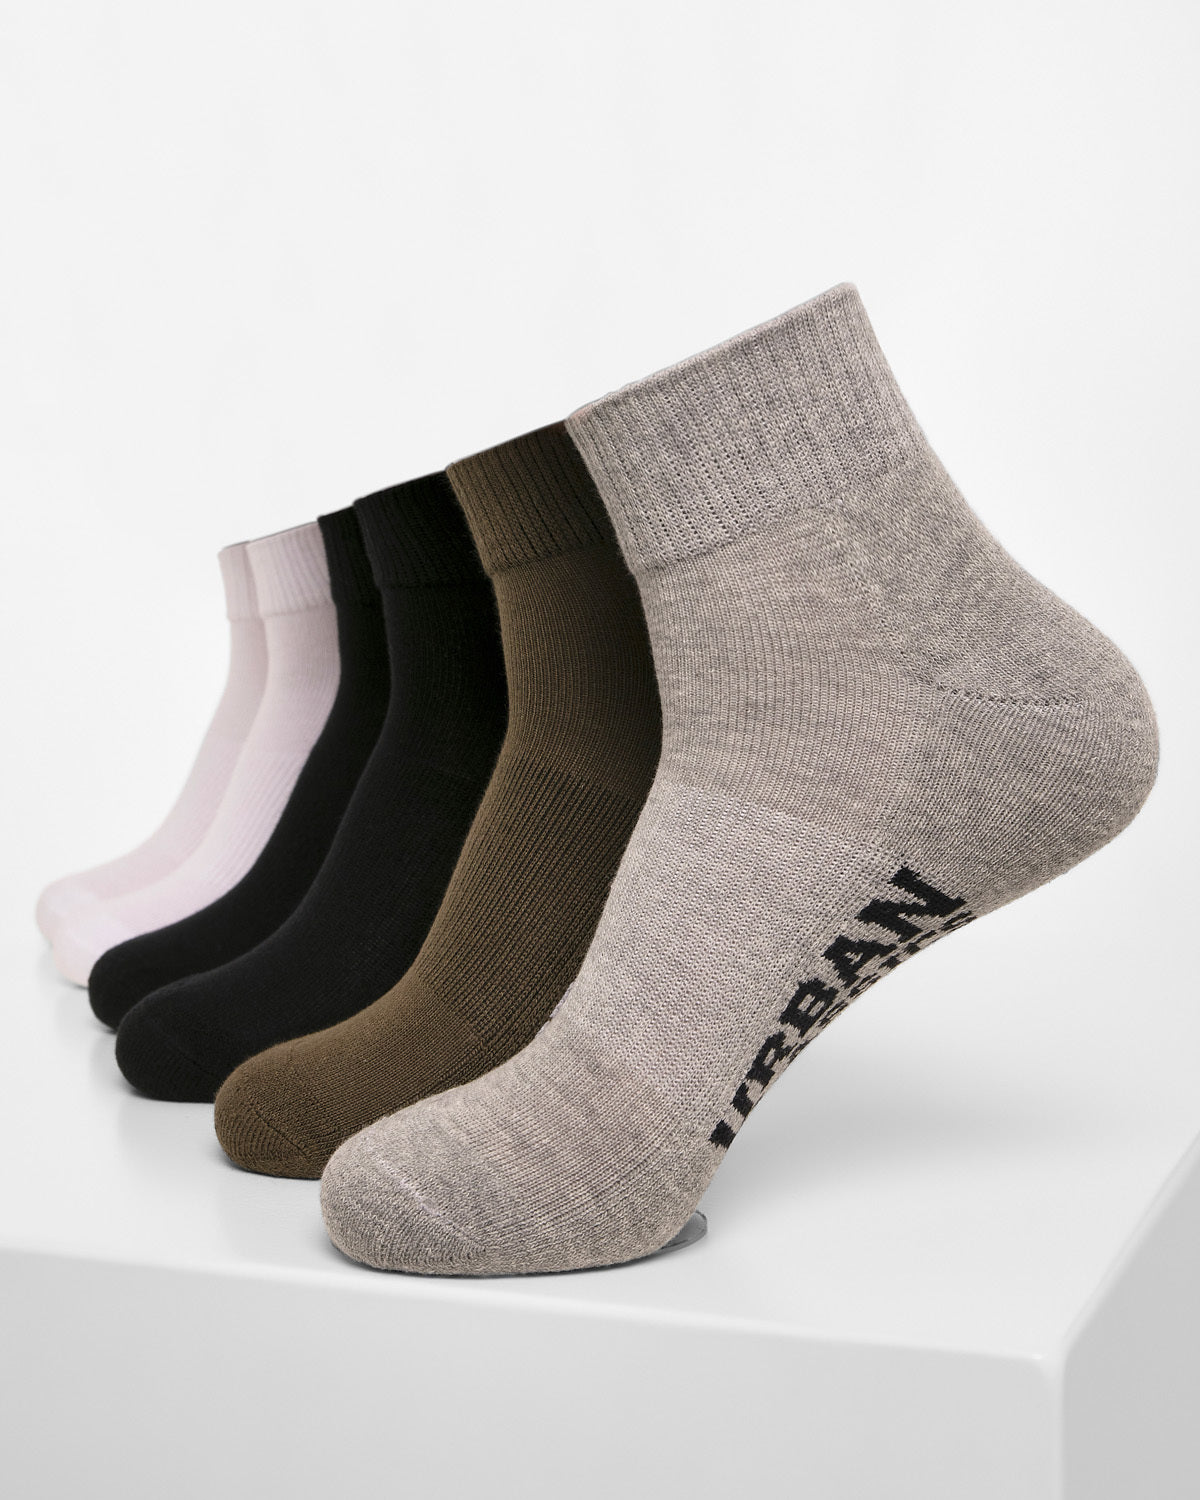 Urban Classics High sneaker sukat 6-pack - Musta/Valkoinen/Harmaa/Khaki 47-50